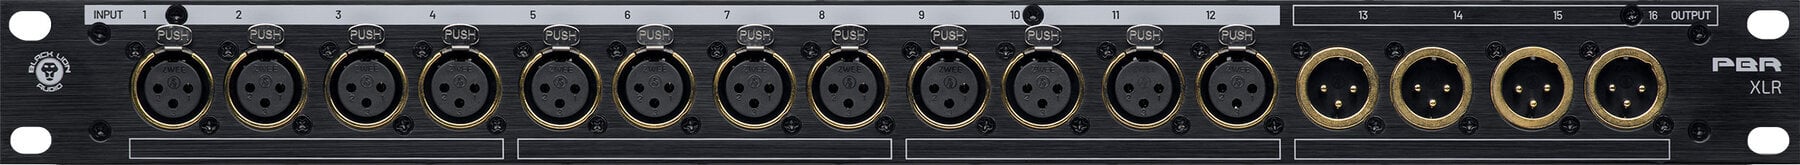 Patch panel Black Lion Audio PBR XLR Patch panel